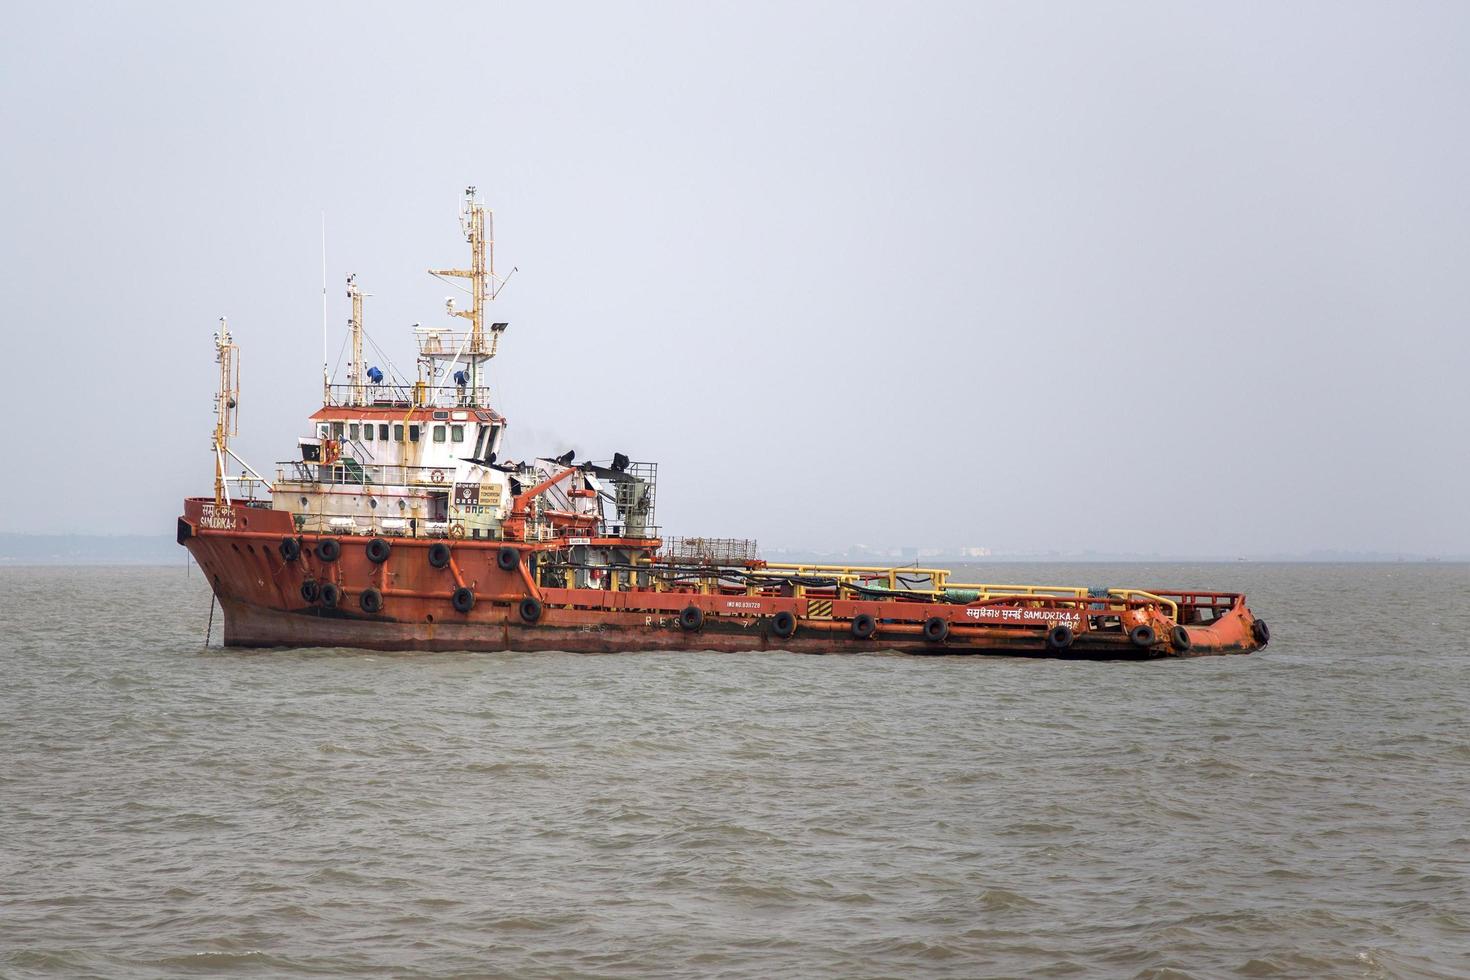 Mumbai, India, 11 de octubre de 2015 - Nave industrial en las aguas de Mumbai. la industria portuaria y naviera emplea a muchos residentes directa e indirectamente. foto